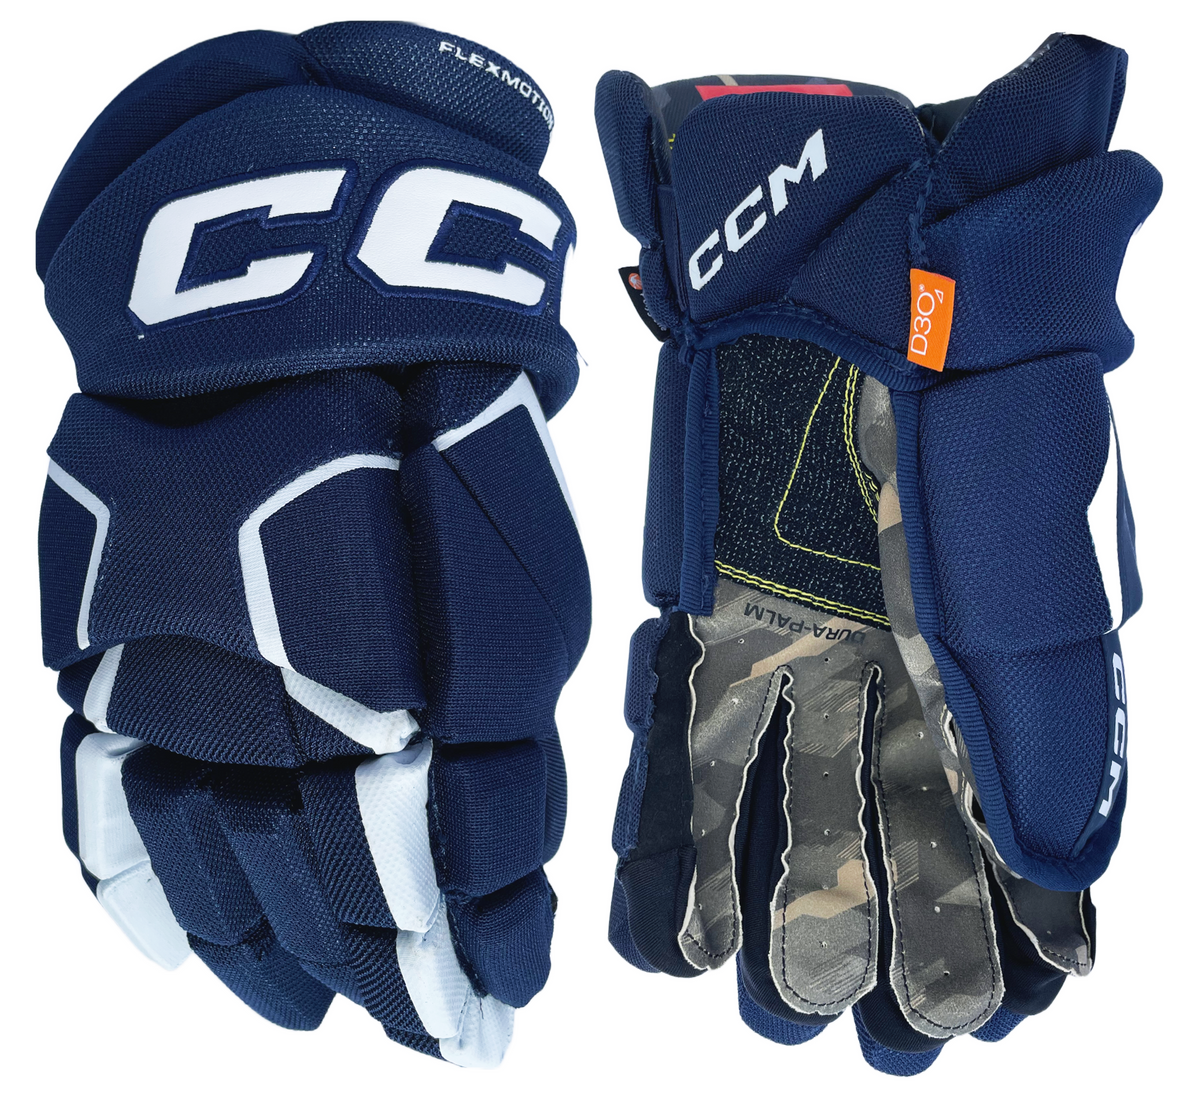 CCM Tacks AS-V gants de hockey junior